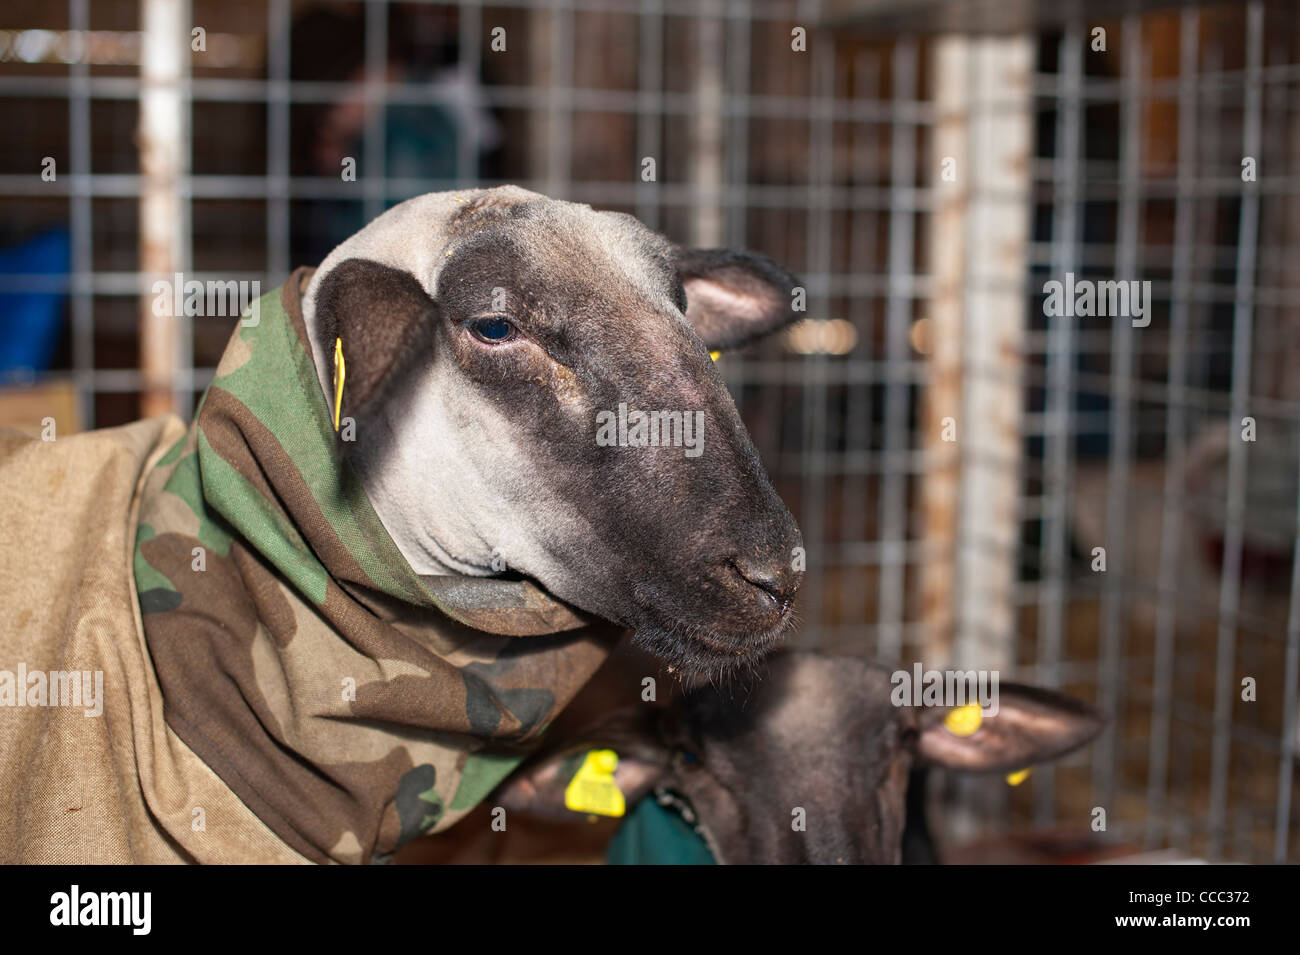 Tiere im Winter - Ziege trägt einen Mantel für den Schutz gegen niedrige Temperaturen Stockfoto